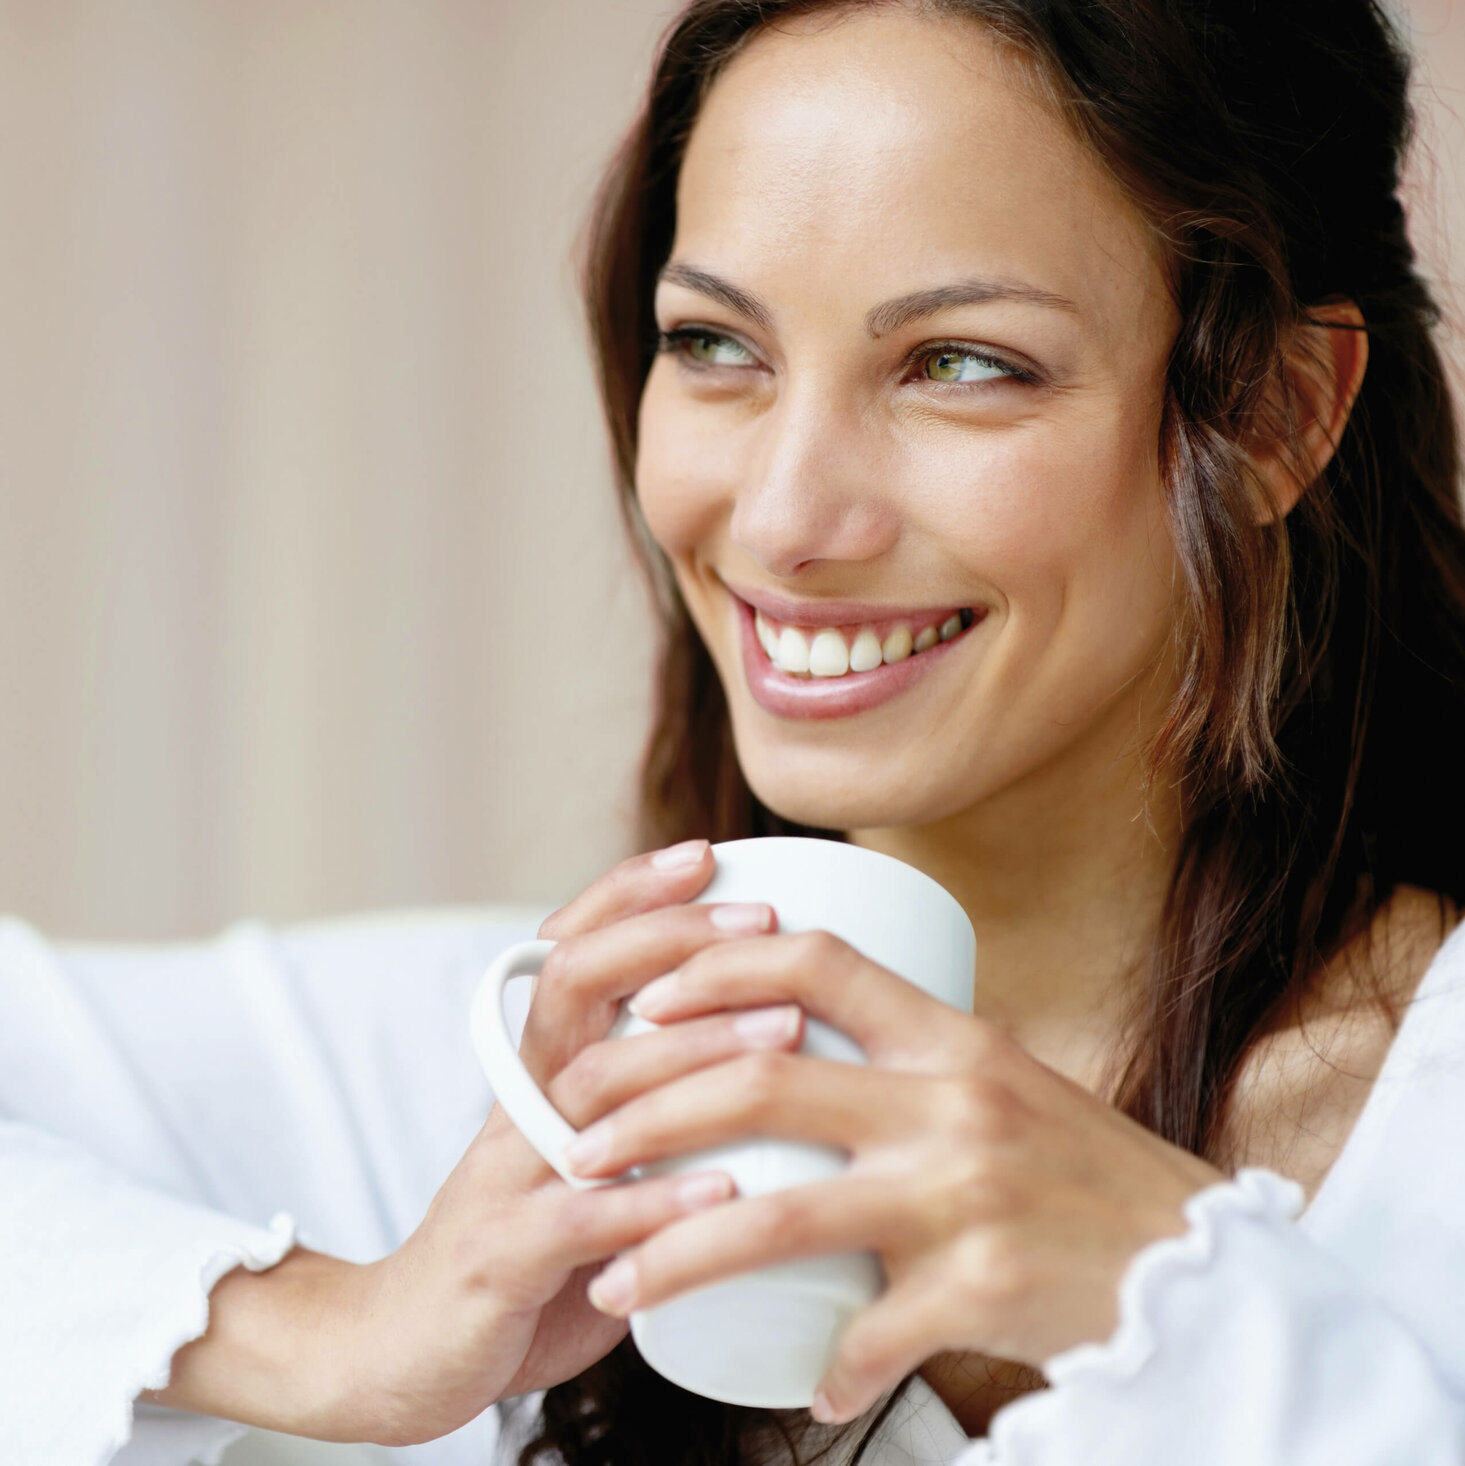 Eine Frau hält eine Kaffeetasse und lächelt